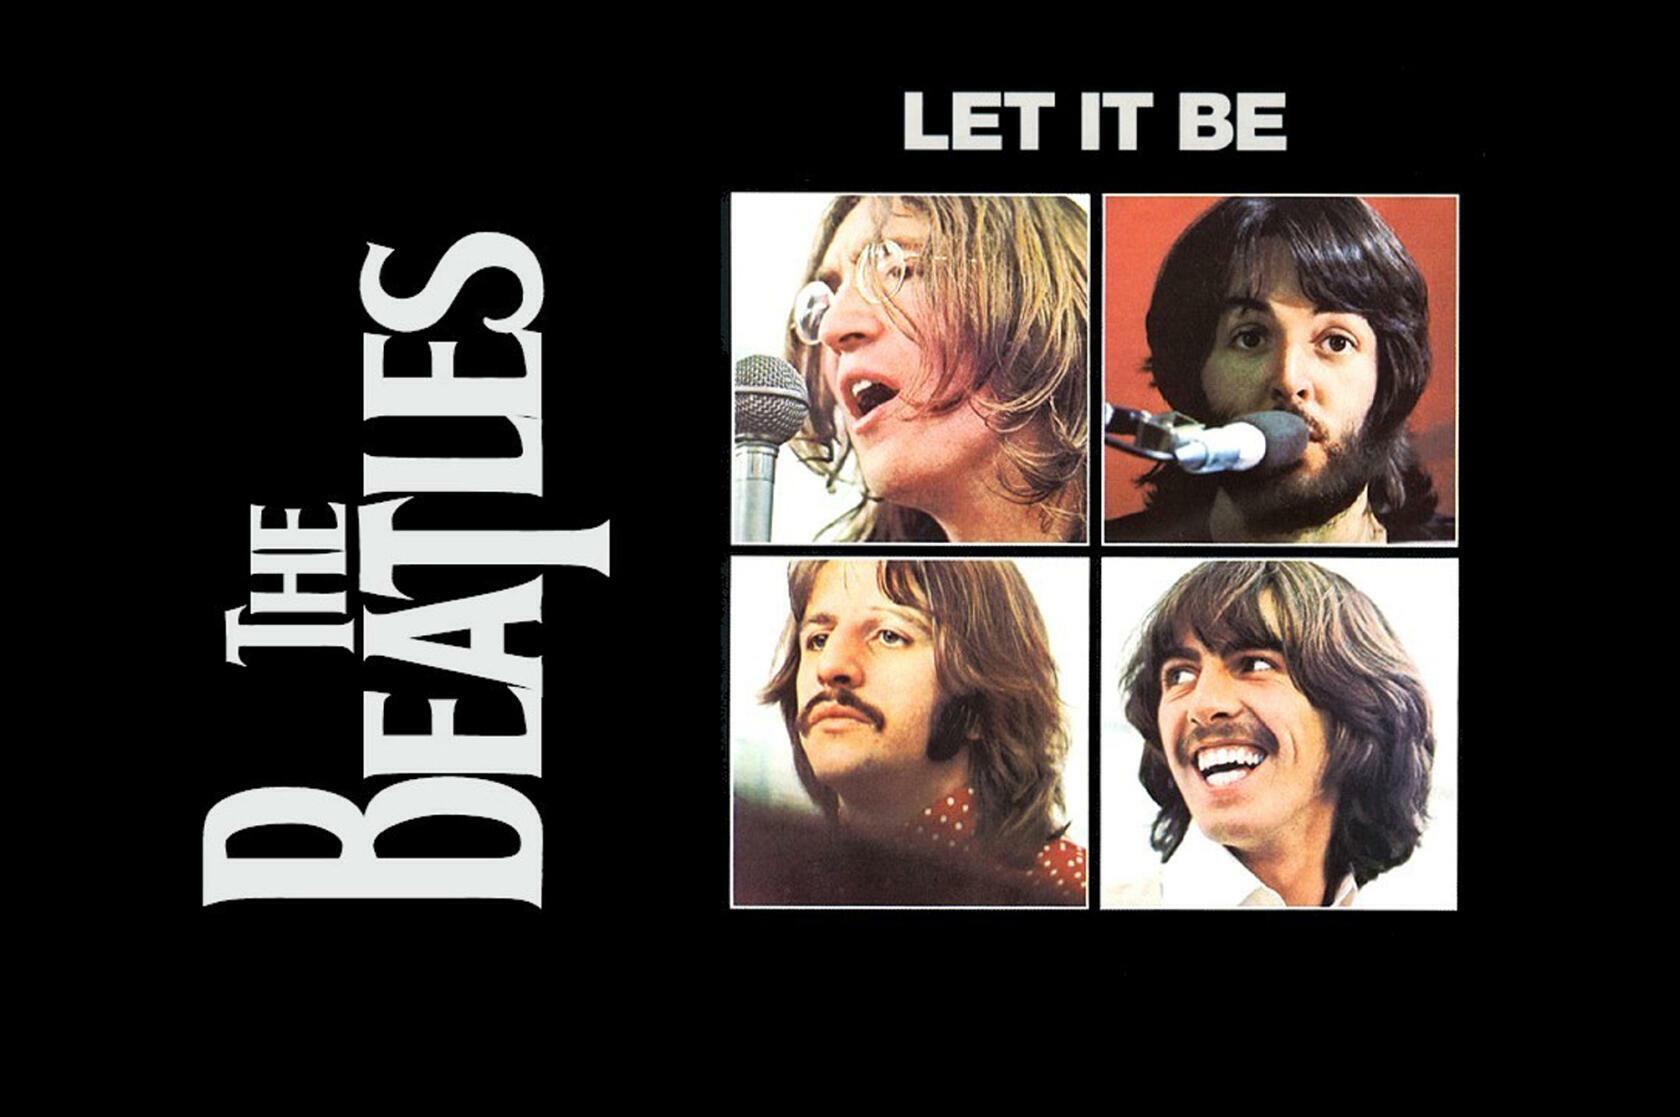 Лет ит би слушать. The Beatles Let it be 1970 обложка. Пол Маккартни 1970 Let it be. Обложка альбома Битлз лет ИТ би. Обложка альбома Битлз Let it be.